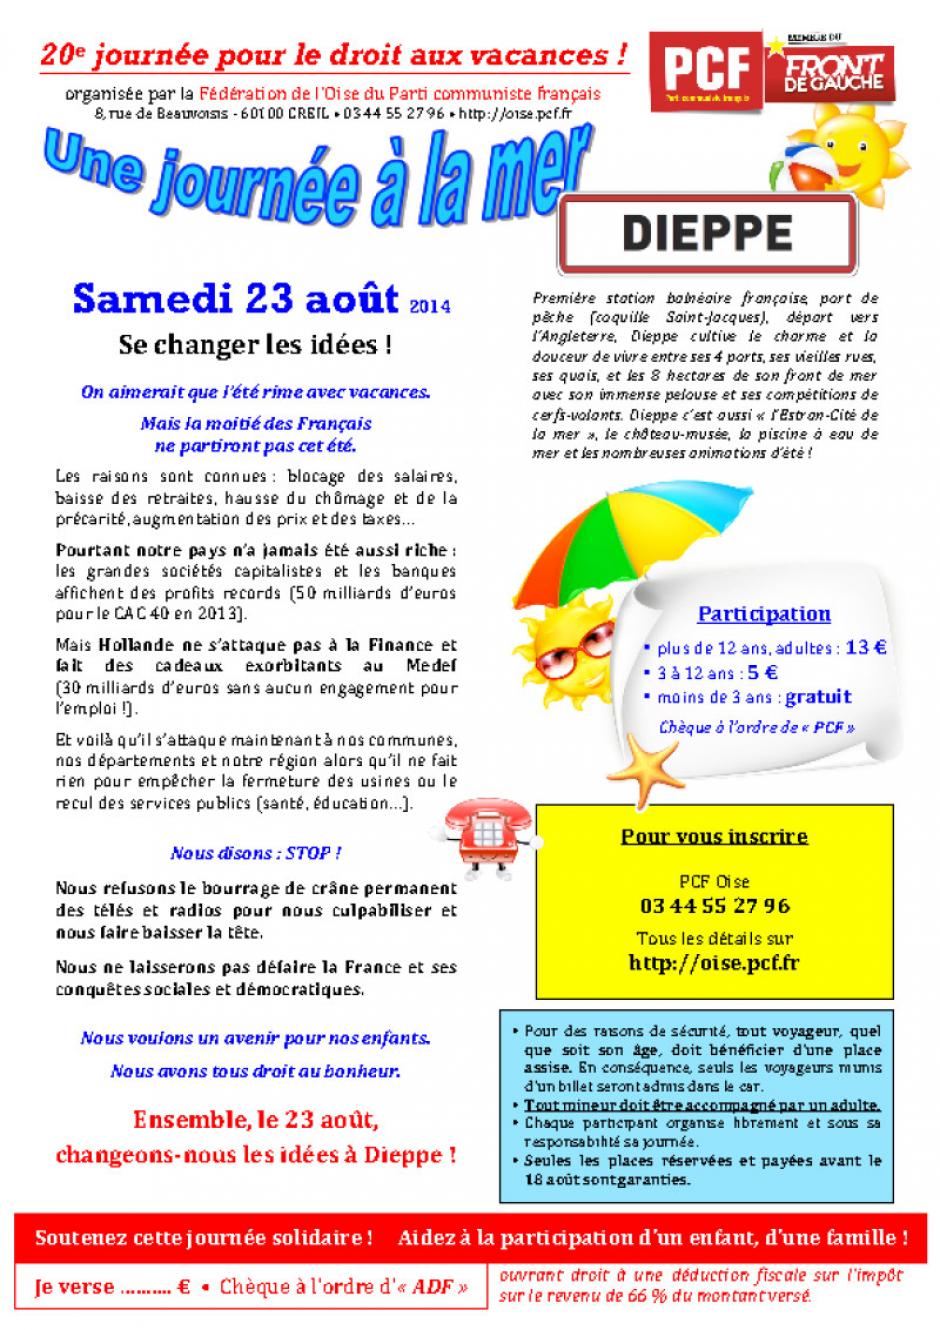 Tracts par secteur géographique « 20e journée à la mer » pour diffusion internet - Dieppe, 23 août 2014